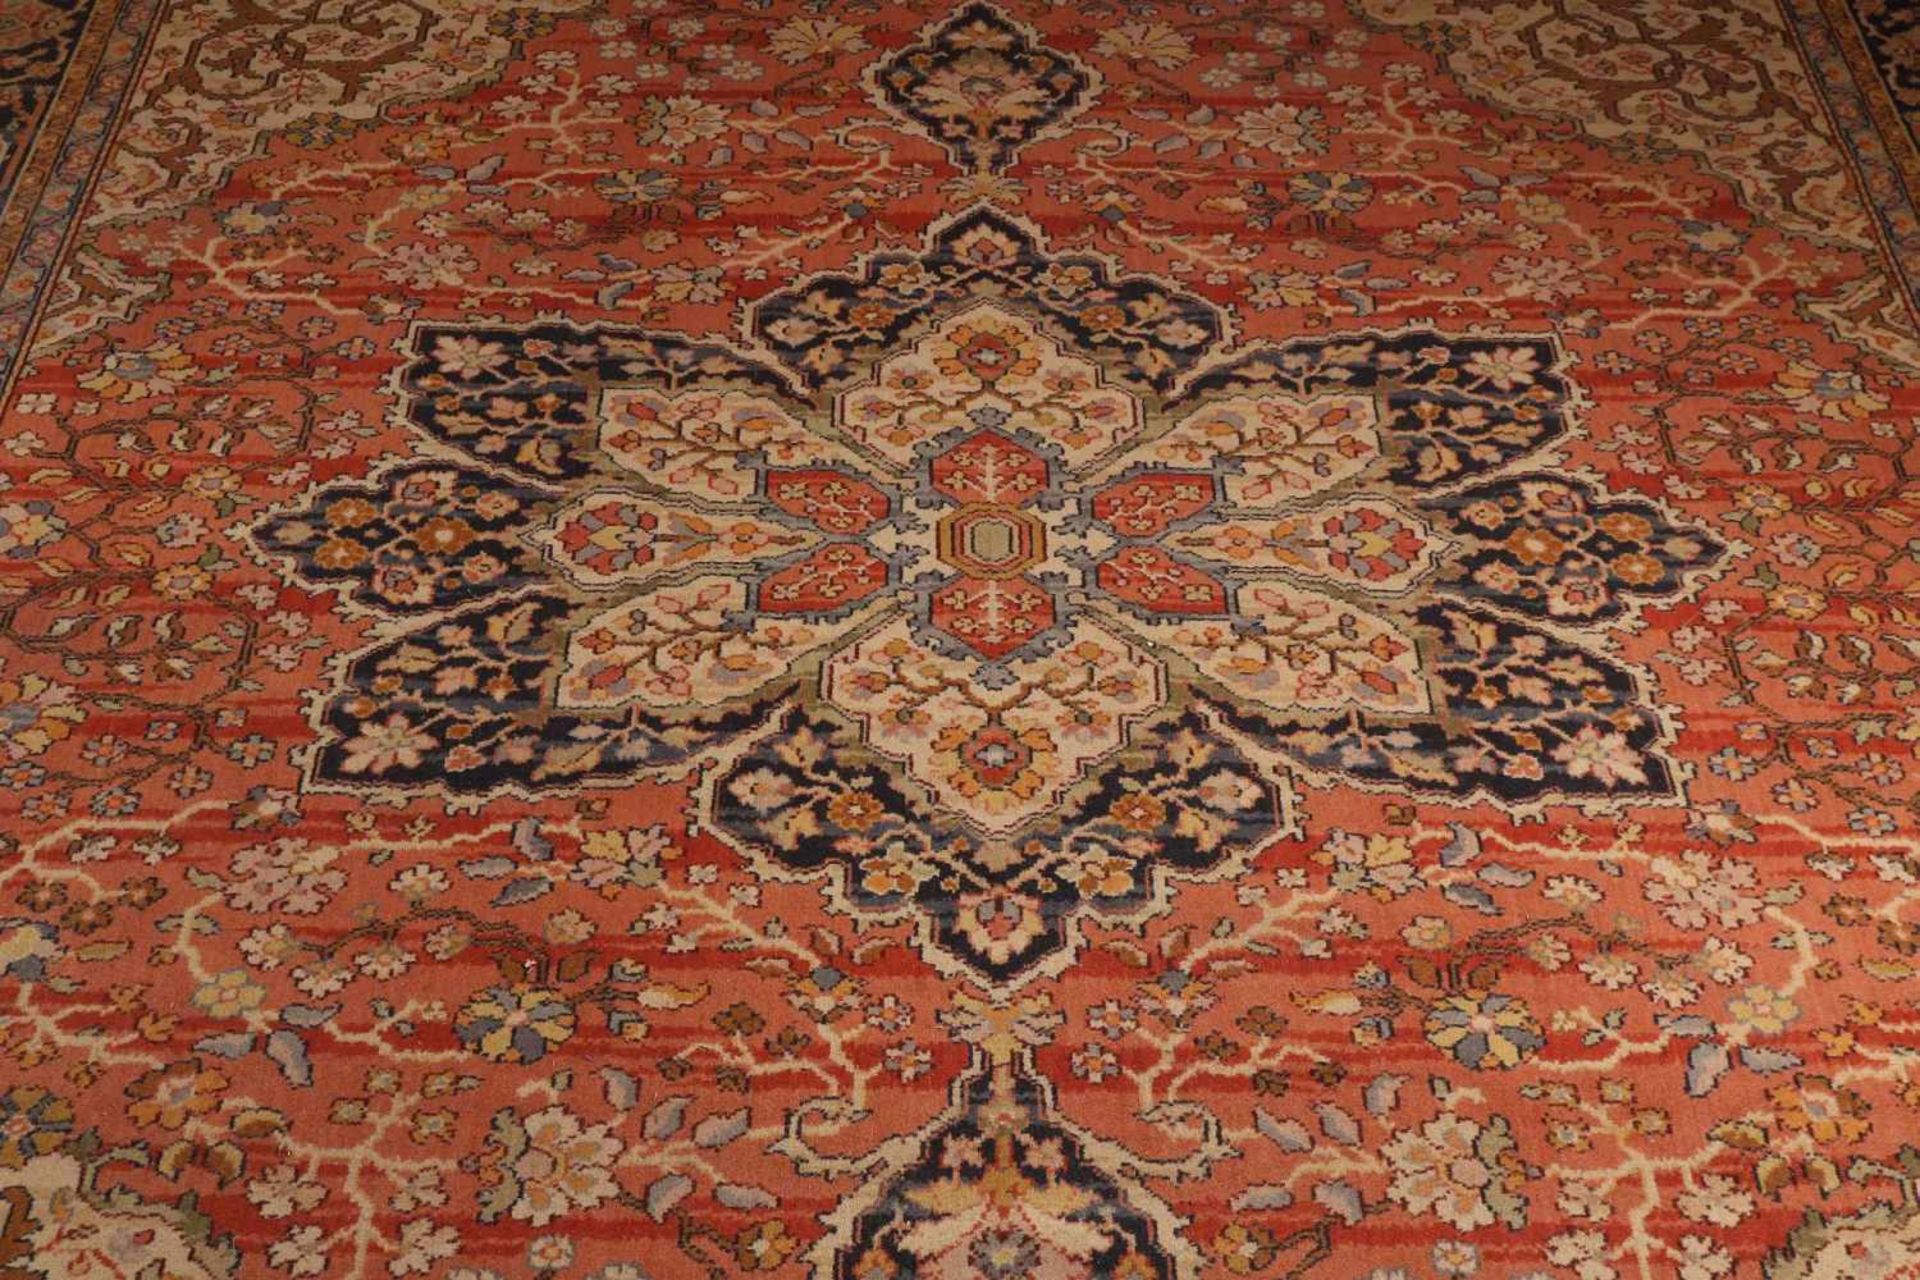 Großer handgeknüpfter Teppich. Komplett mit Blumendekor dekoriert. Größe: 345 x 250 cm. In guter - Bild 2 aus 3